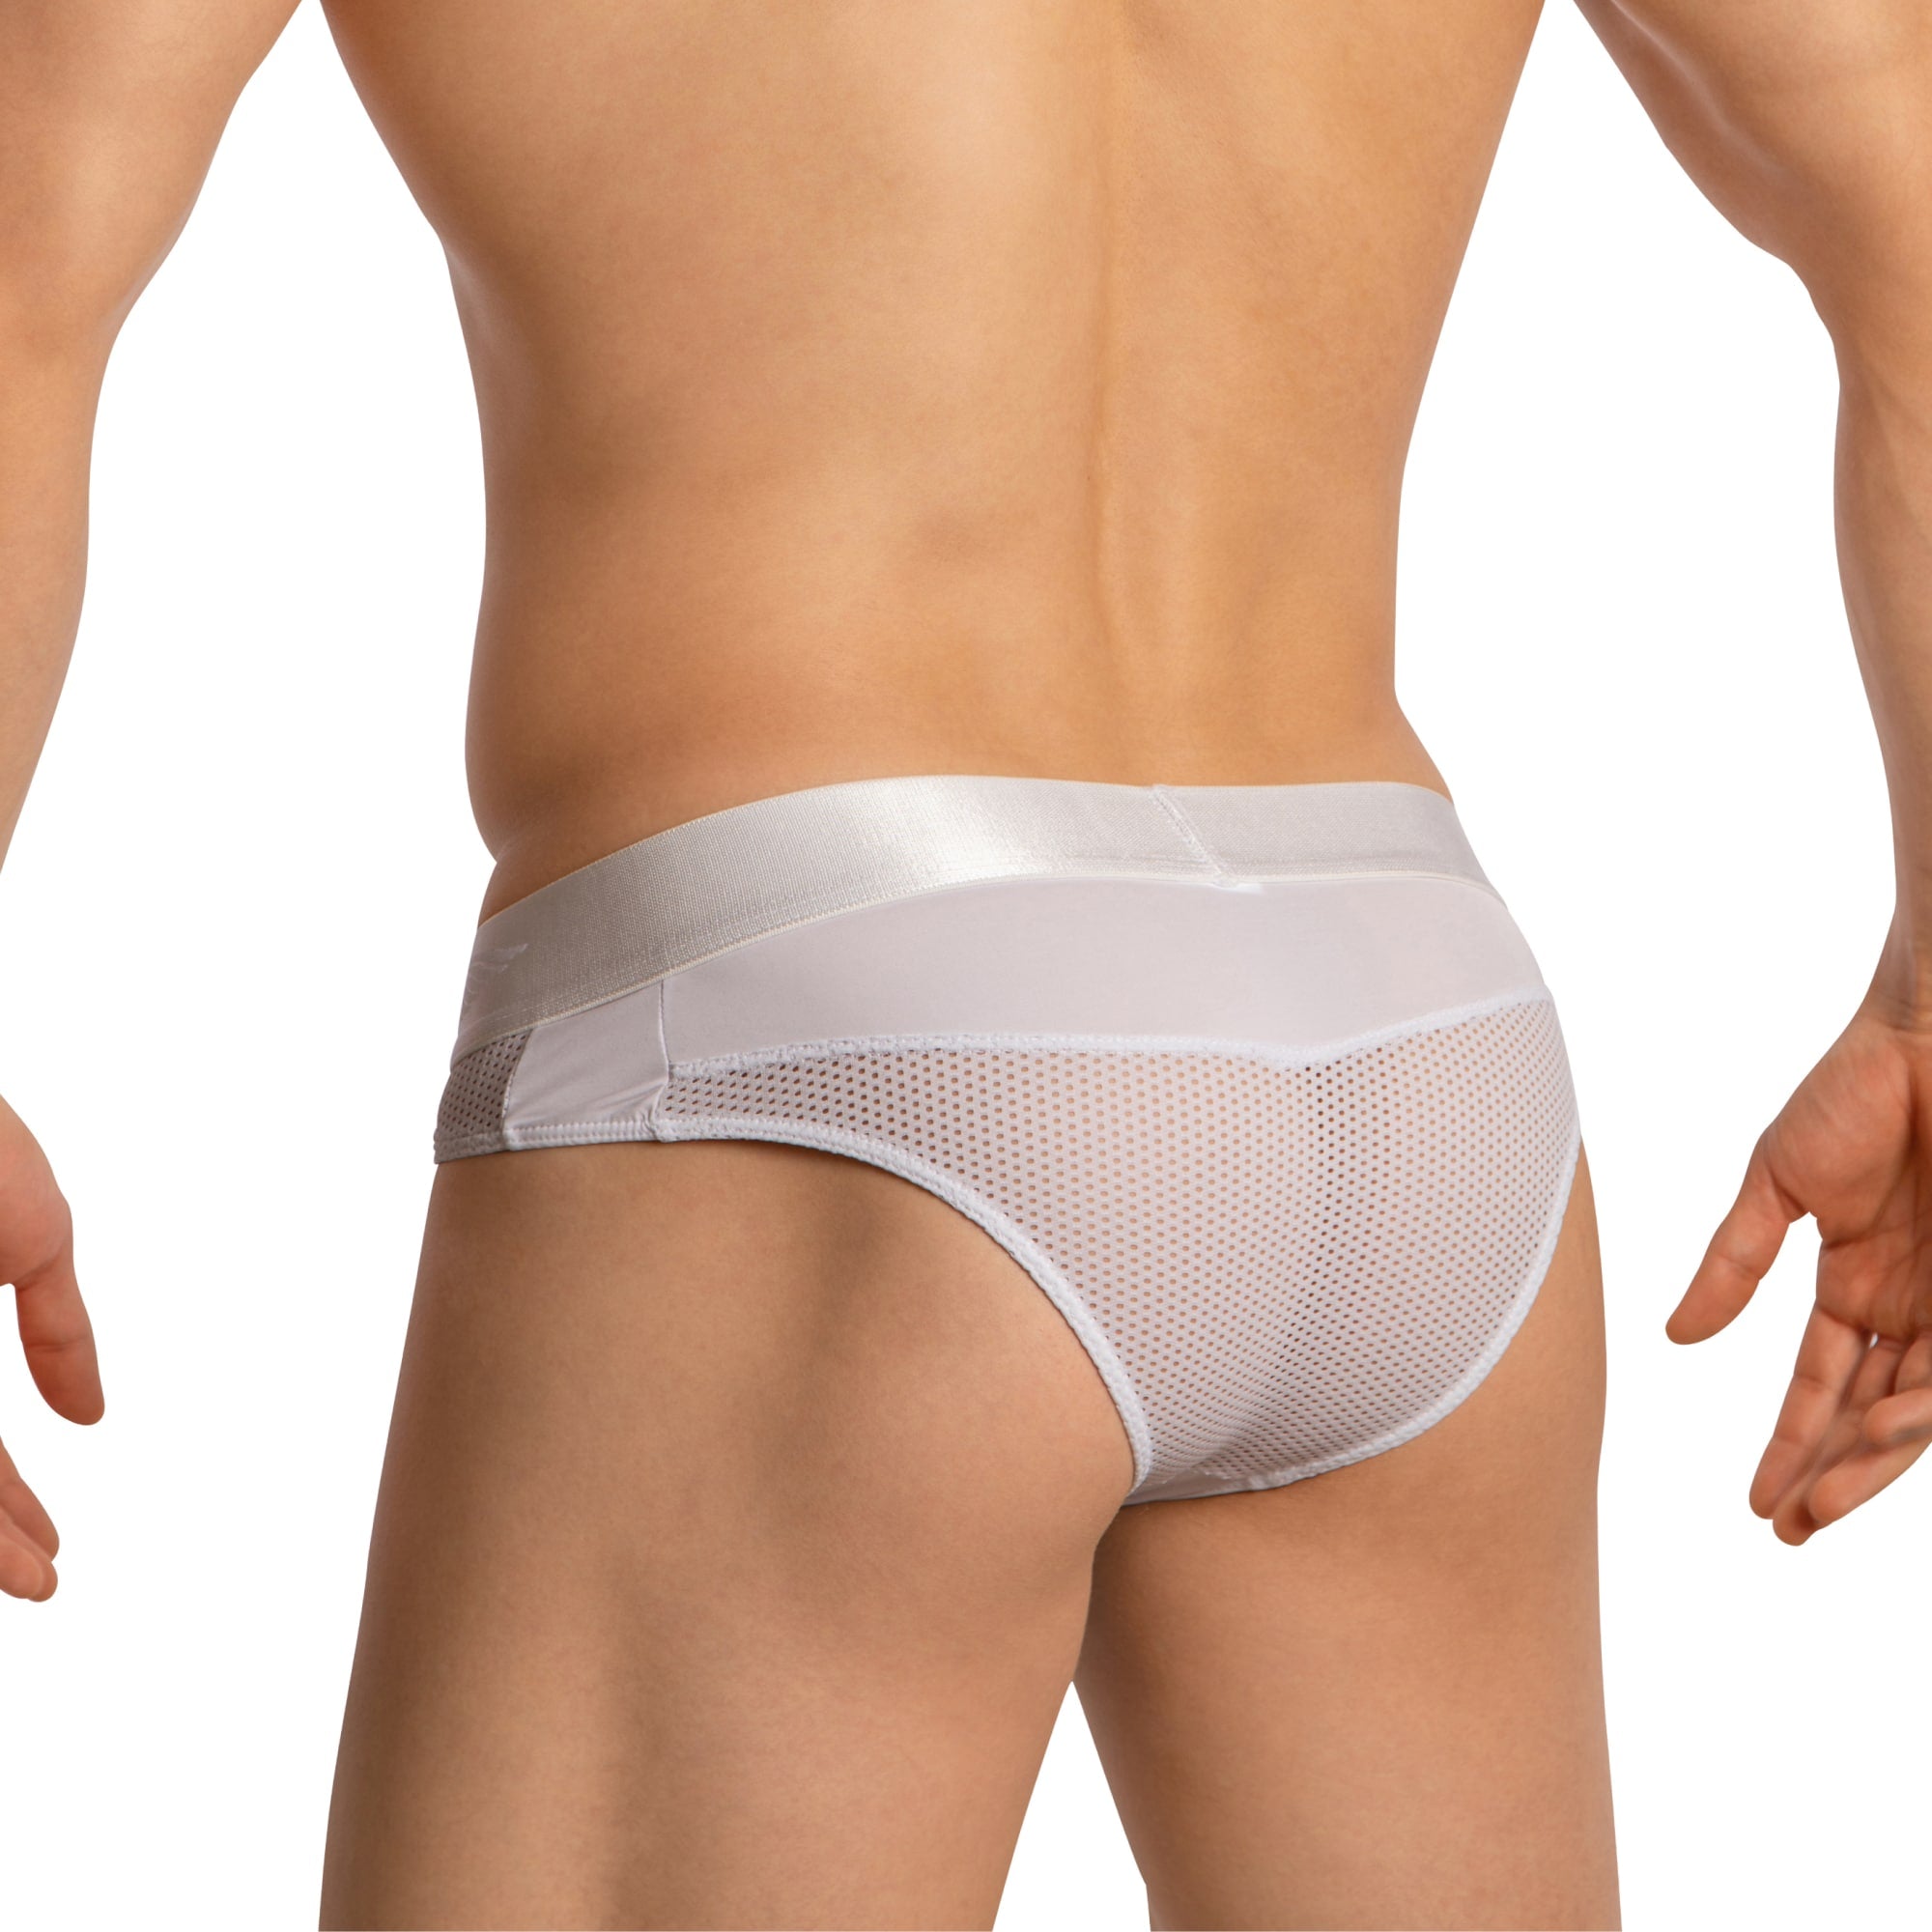 Agacio Men's Sheer Thongs AGJ042 Seductive Men's Undergarment